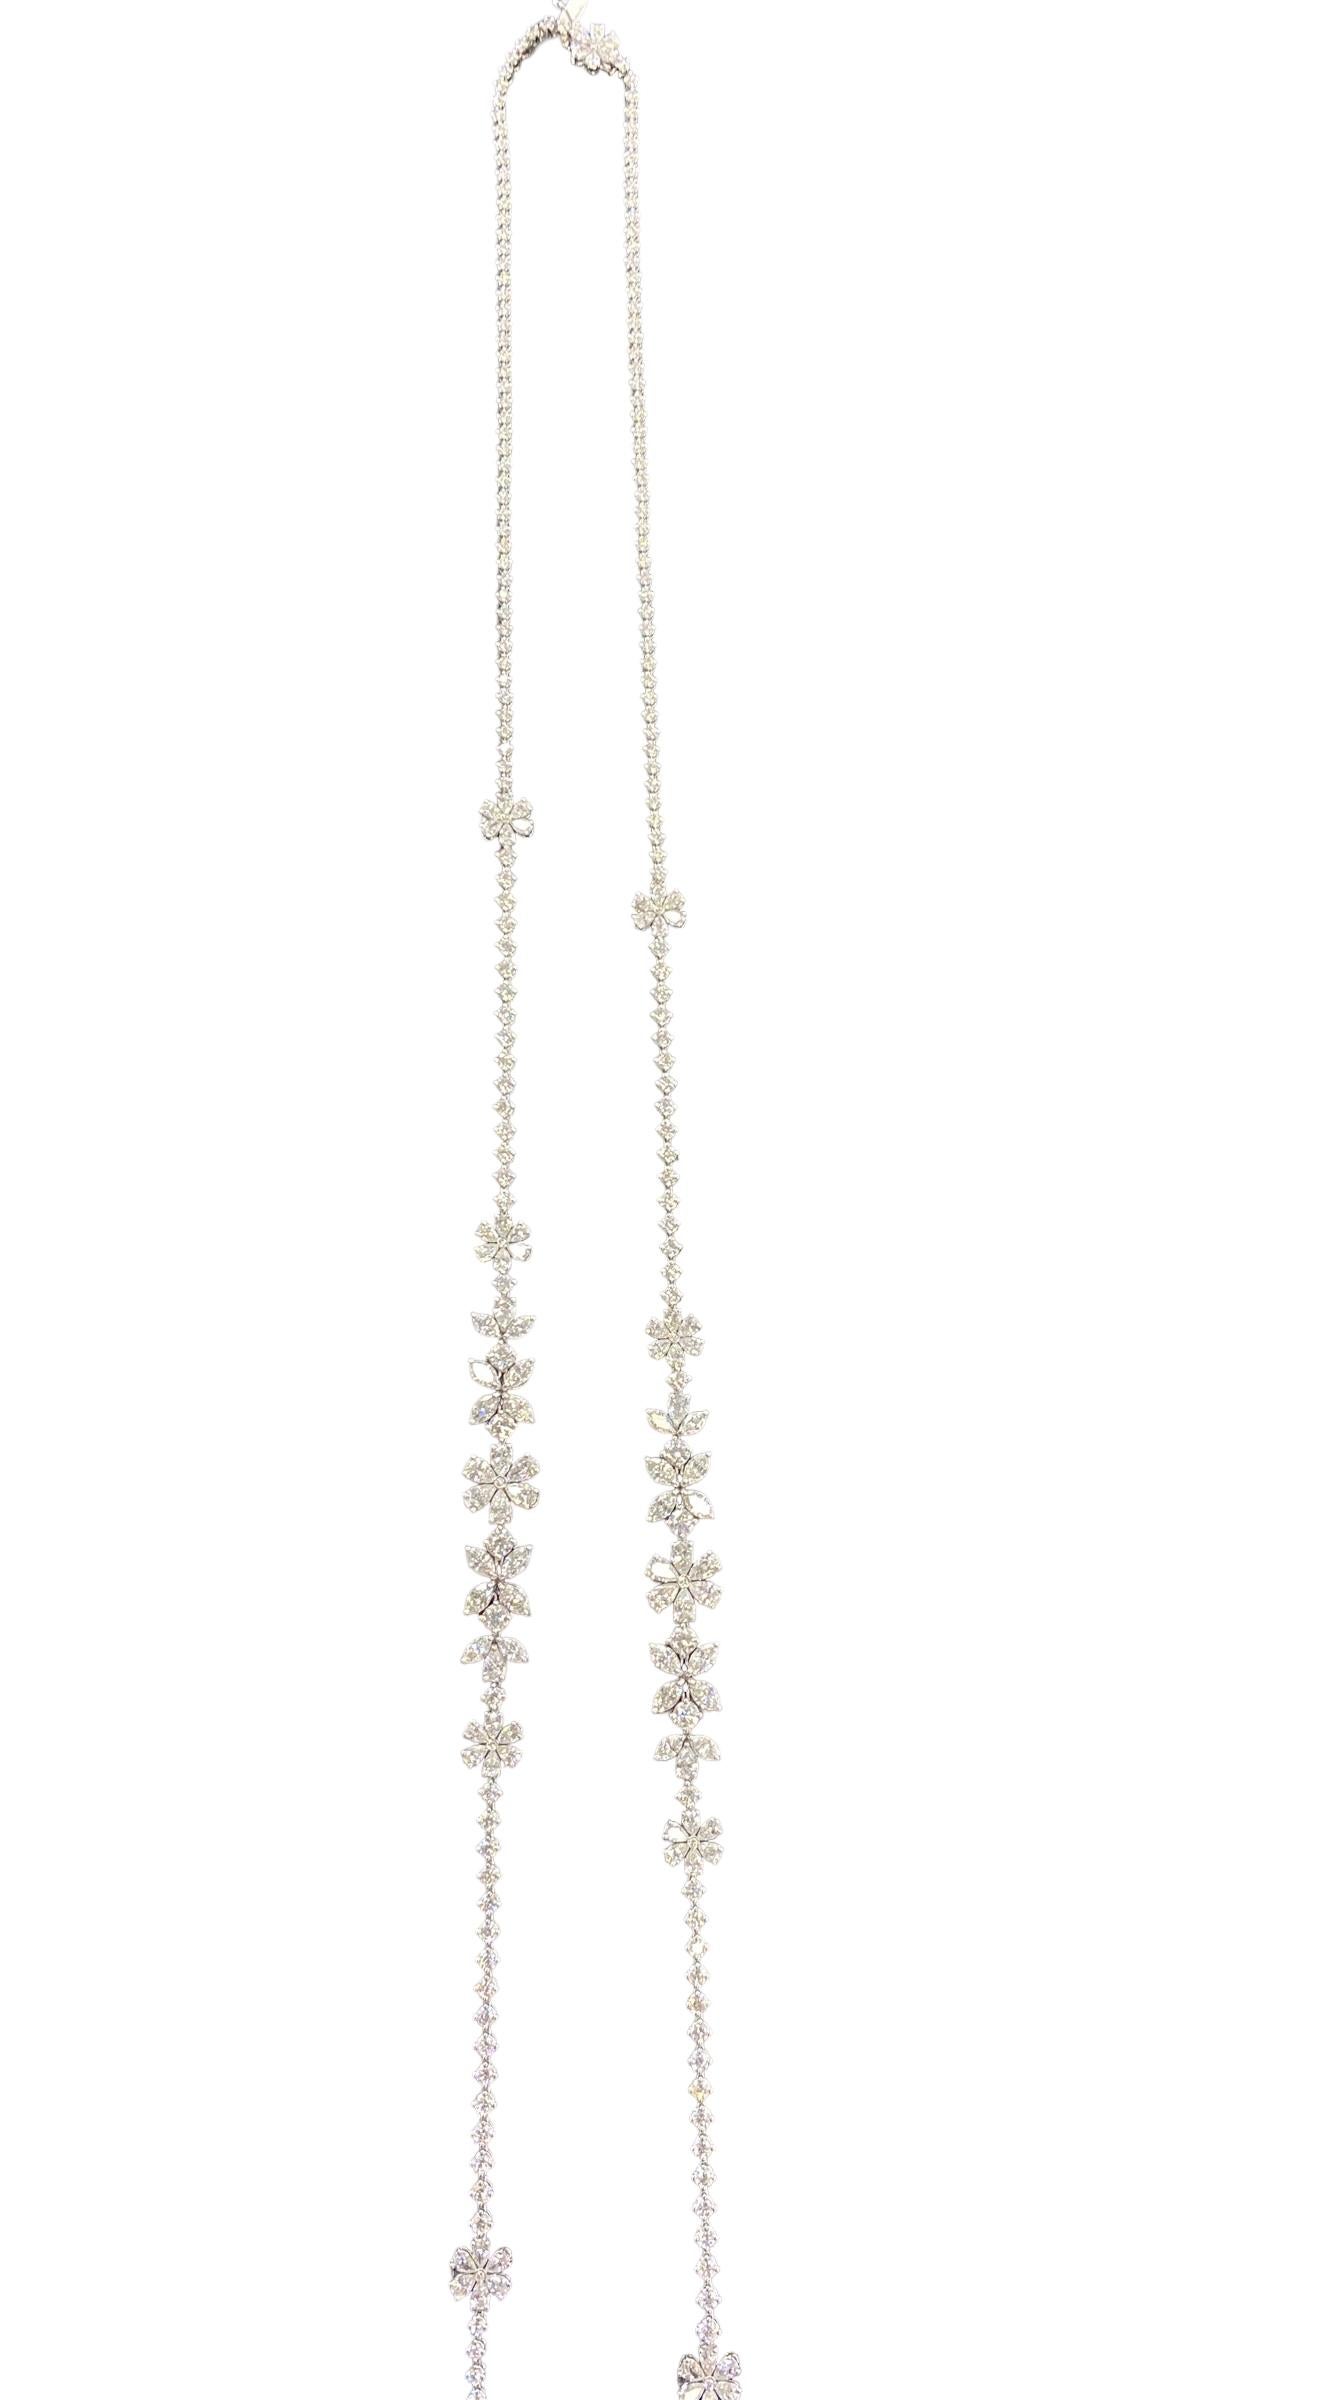 Zydo 18k Diamond Flower Necklace 27.28 Carats VS-F Color 4